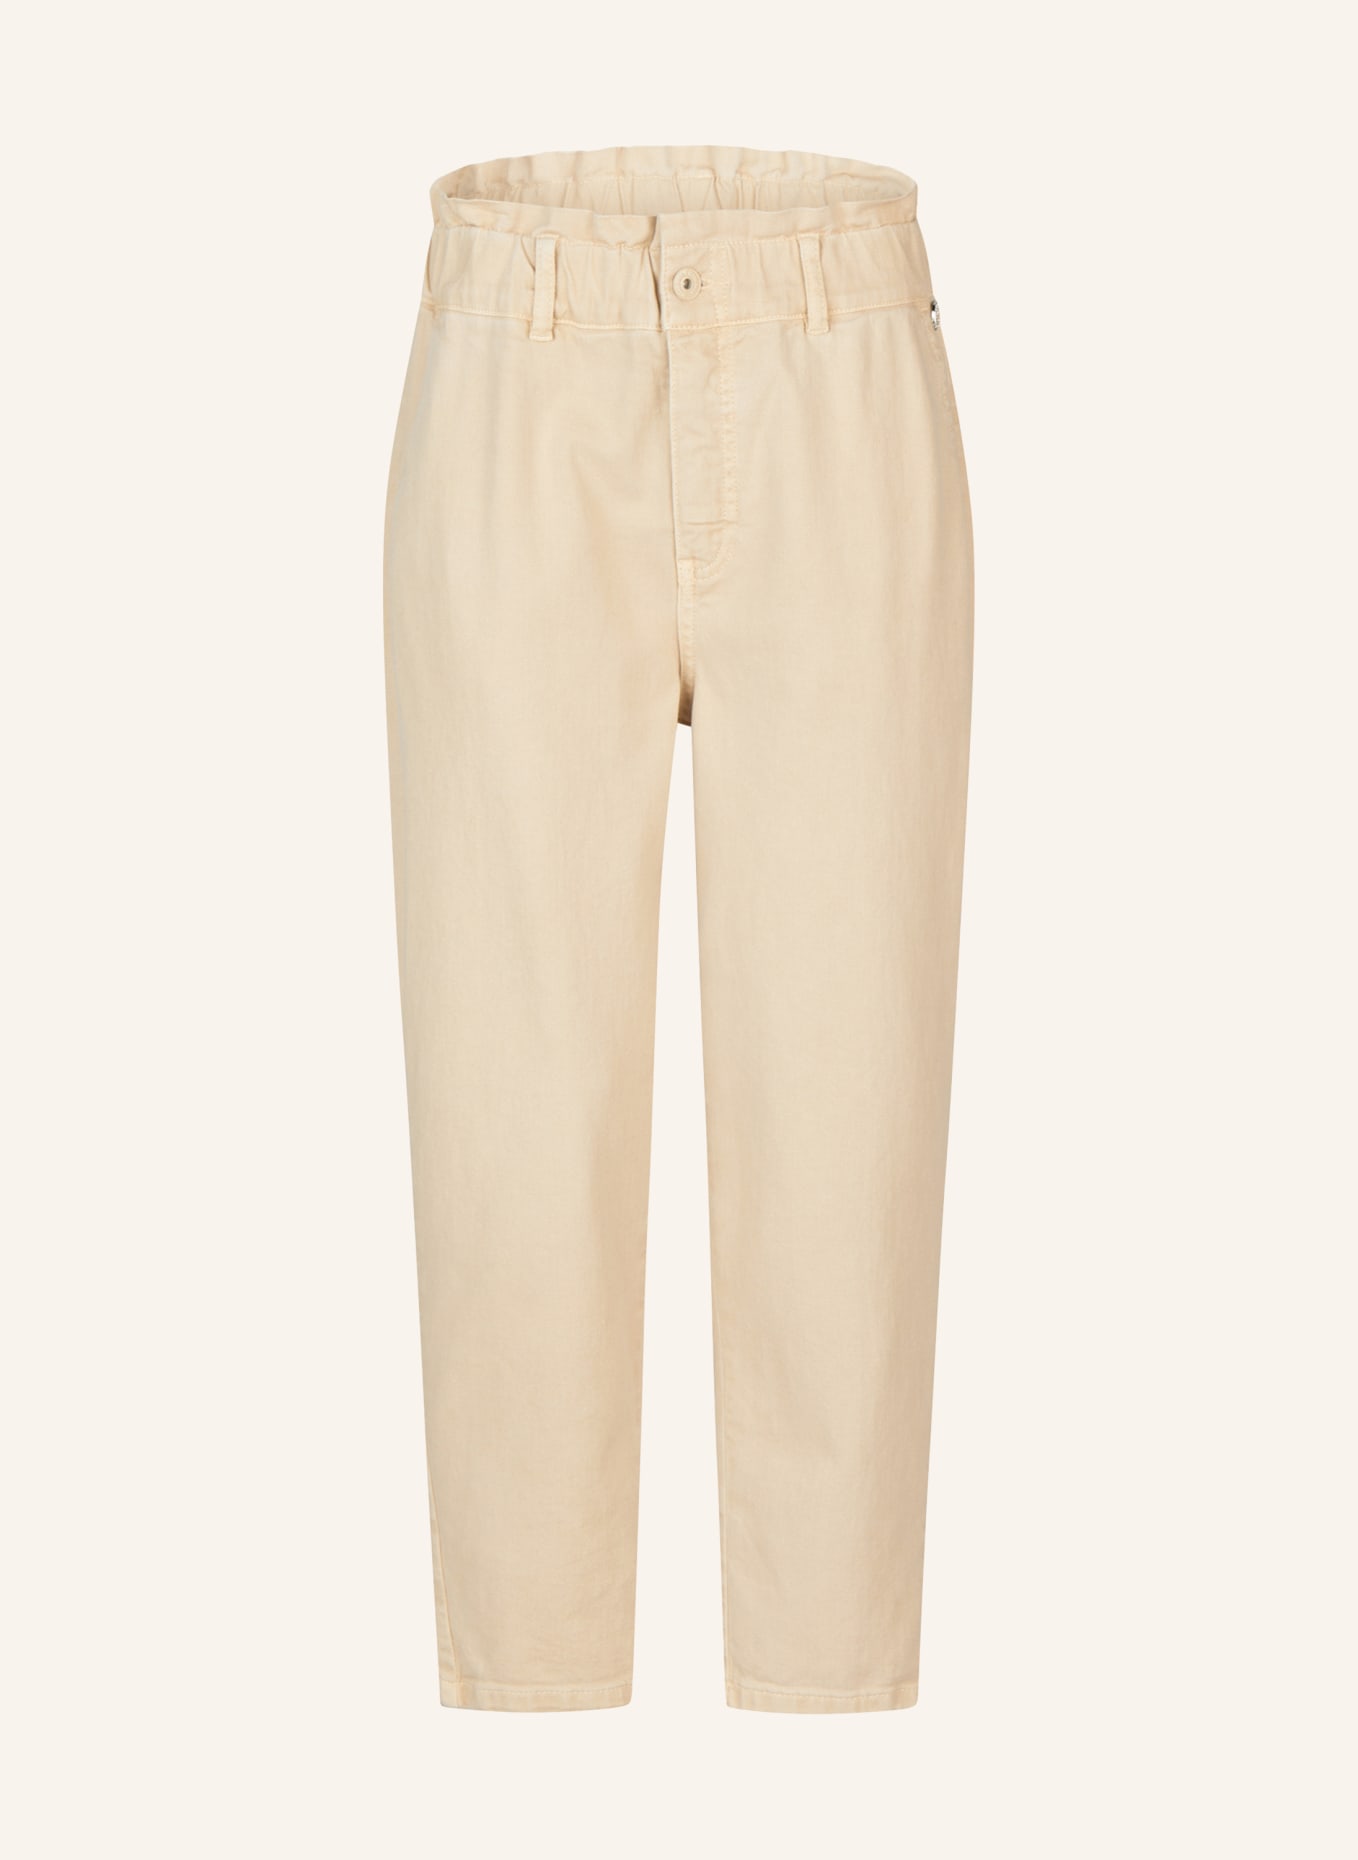 MARC AUREL Jeans, Farbe: BEIGE (Bild 1)